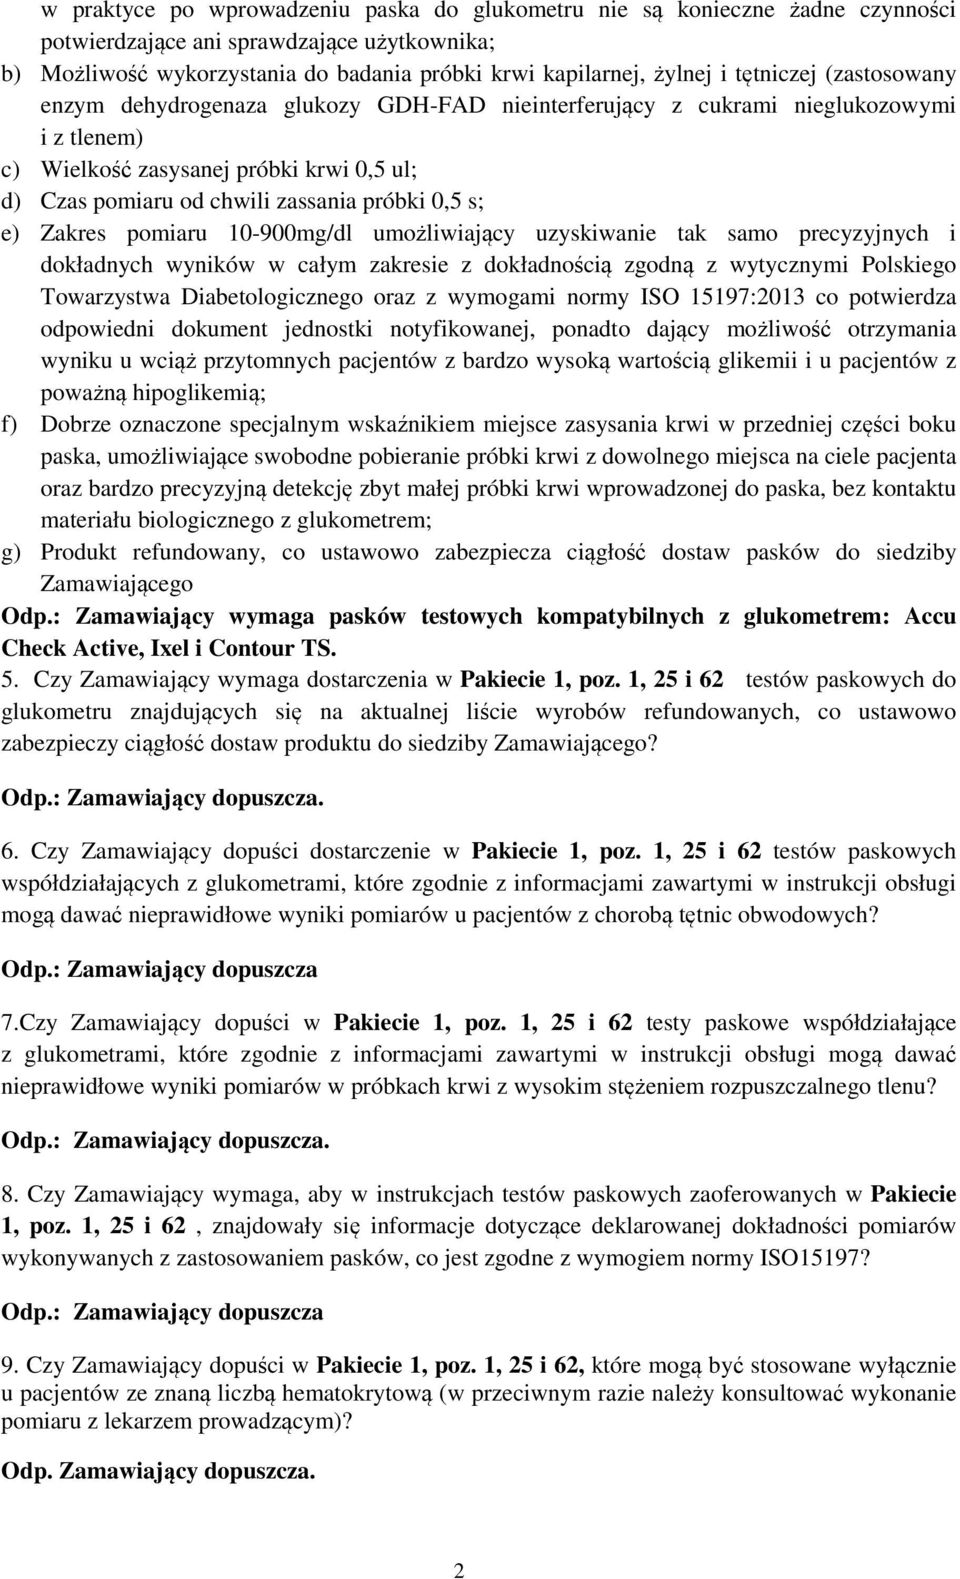 0,5 s; e) Zakres pomiaru 10-900mg/dl umożliwiający uzyskiwanie tak samo precyzyjnych i dokładnych wyników w całym zakresie z dokładnością zgodną z wytycznymi Polskiego Towarzystwa Diabetologicznego